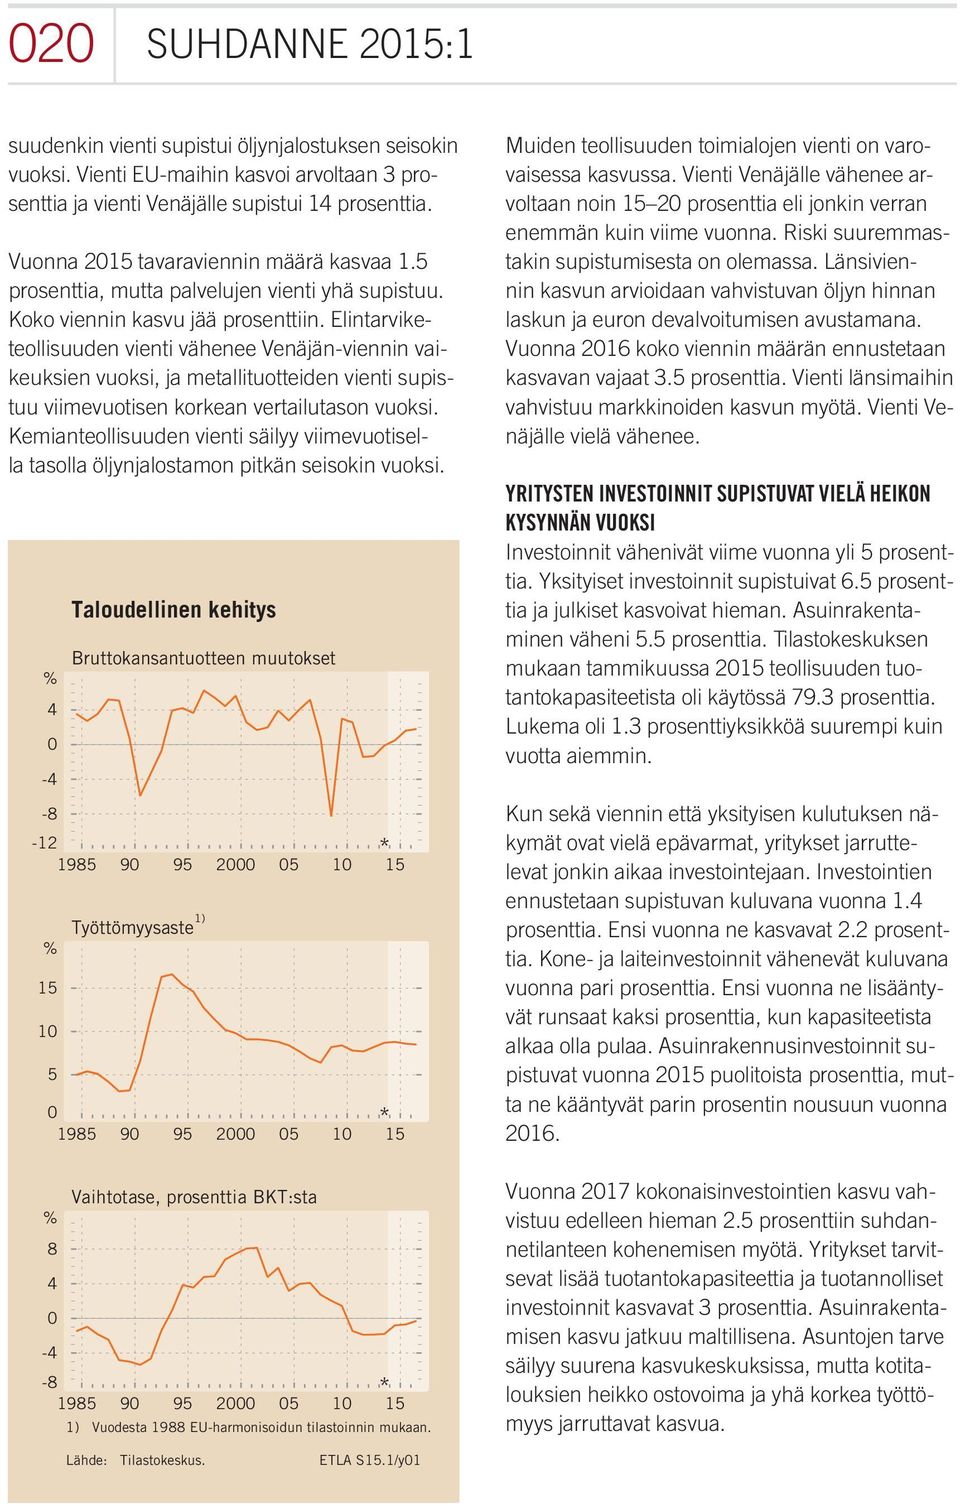 Elintarviketeollisuuden vienti vähenee Venäjän-viennin vaikeuksien vuoksi, ja metallituotteiden vienti supistuu viimevuotisen korkean vertailutason vuoksi.